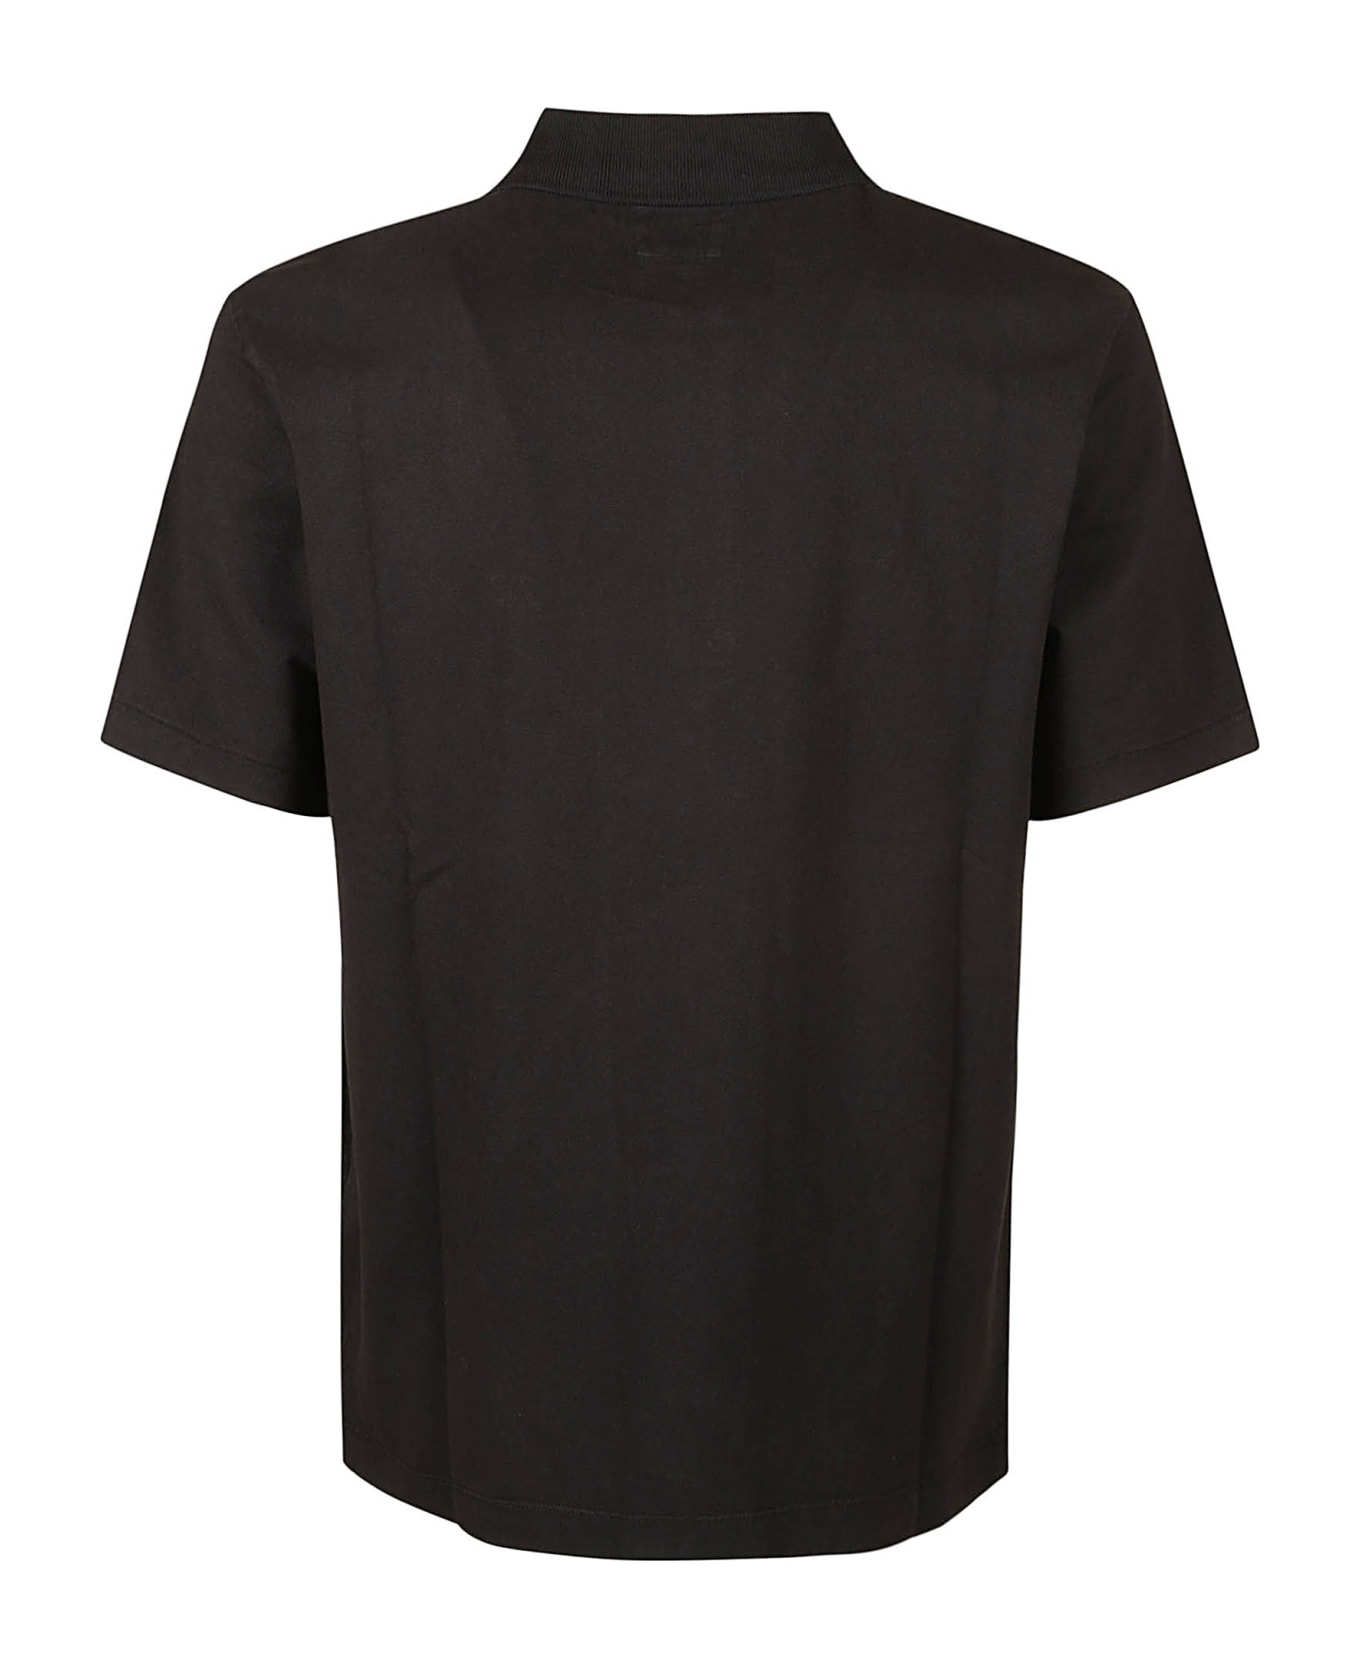 C.P. Company 1020 Short-sleeved Polo Shirt - Black